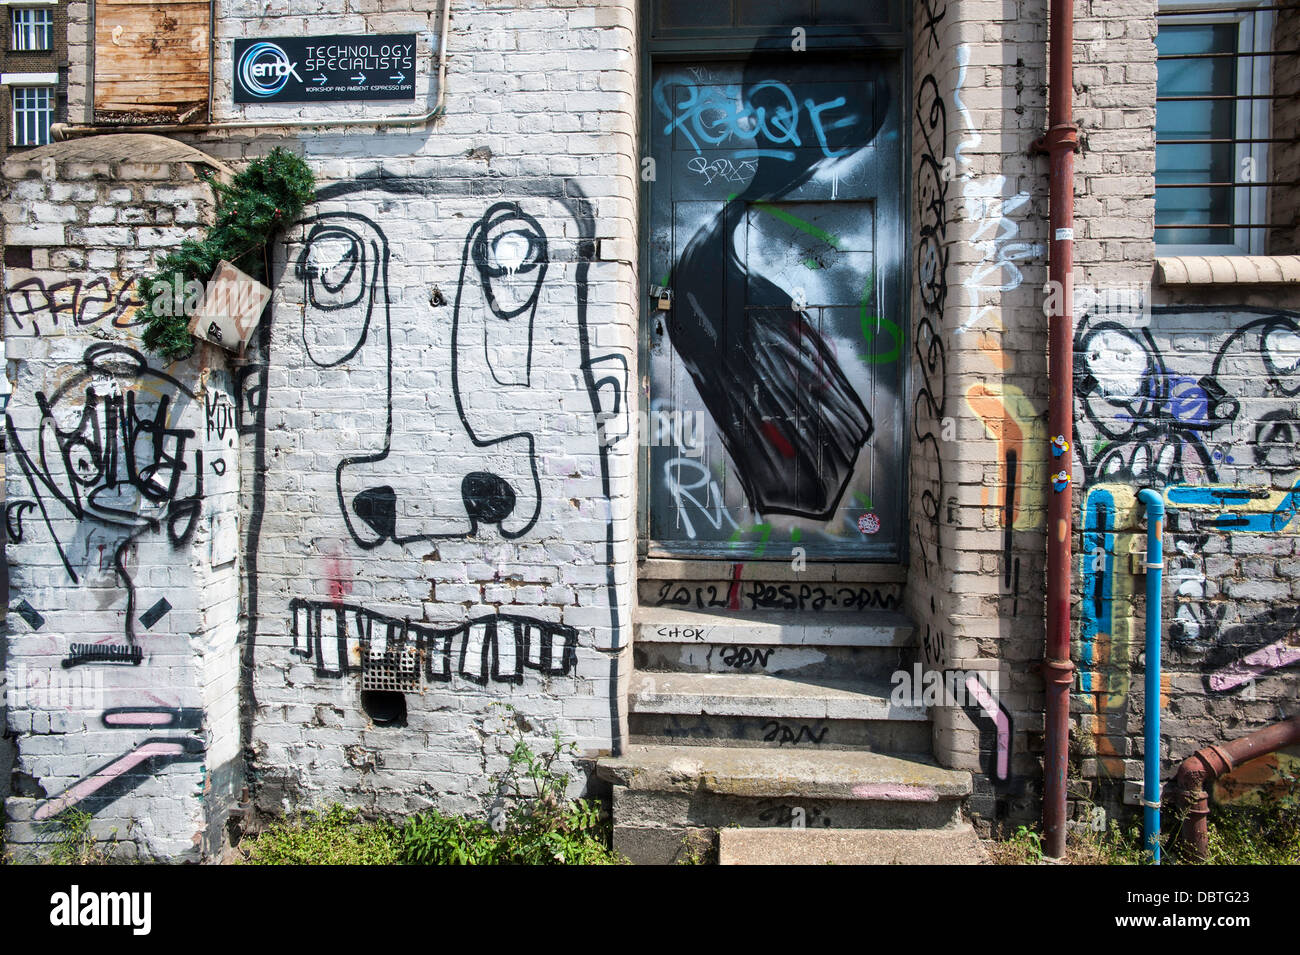 Graffiti Hackney wick e9 arte urbana artistico a parete Foto Stock